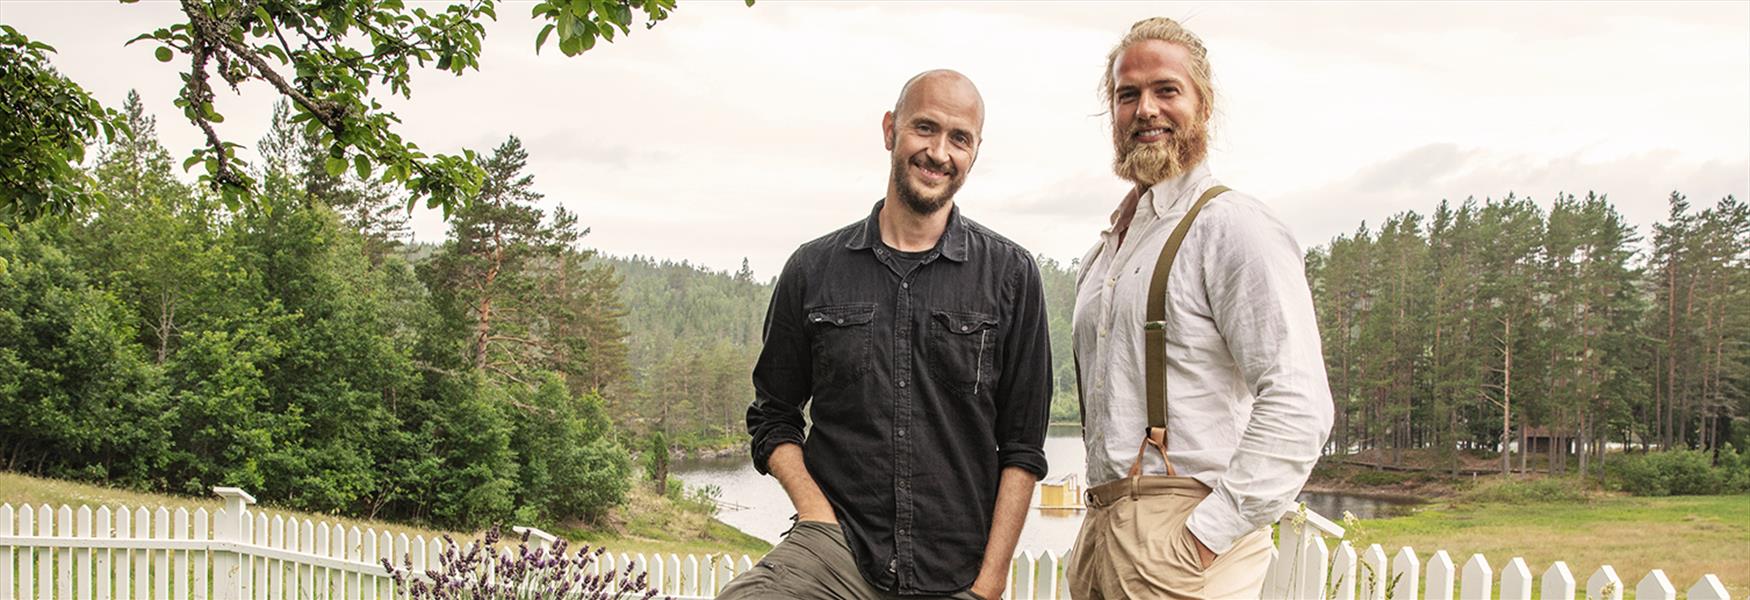 Lasse og Terje fra Farmen på rundtur i Telemark under TelemarksVeka